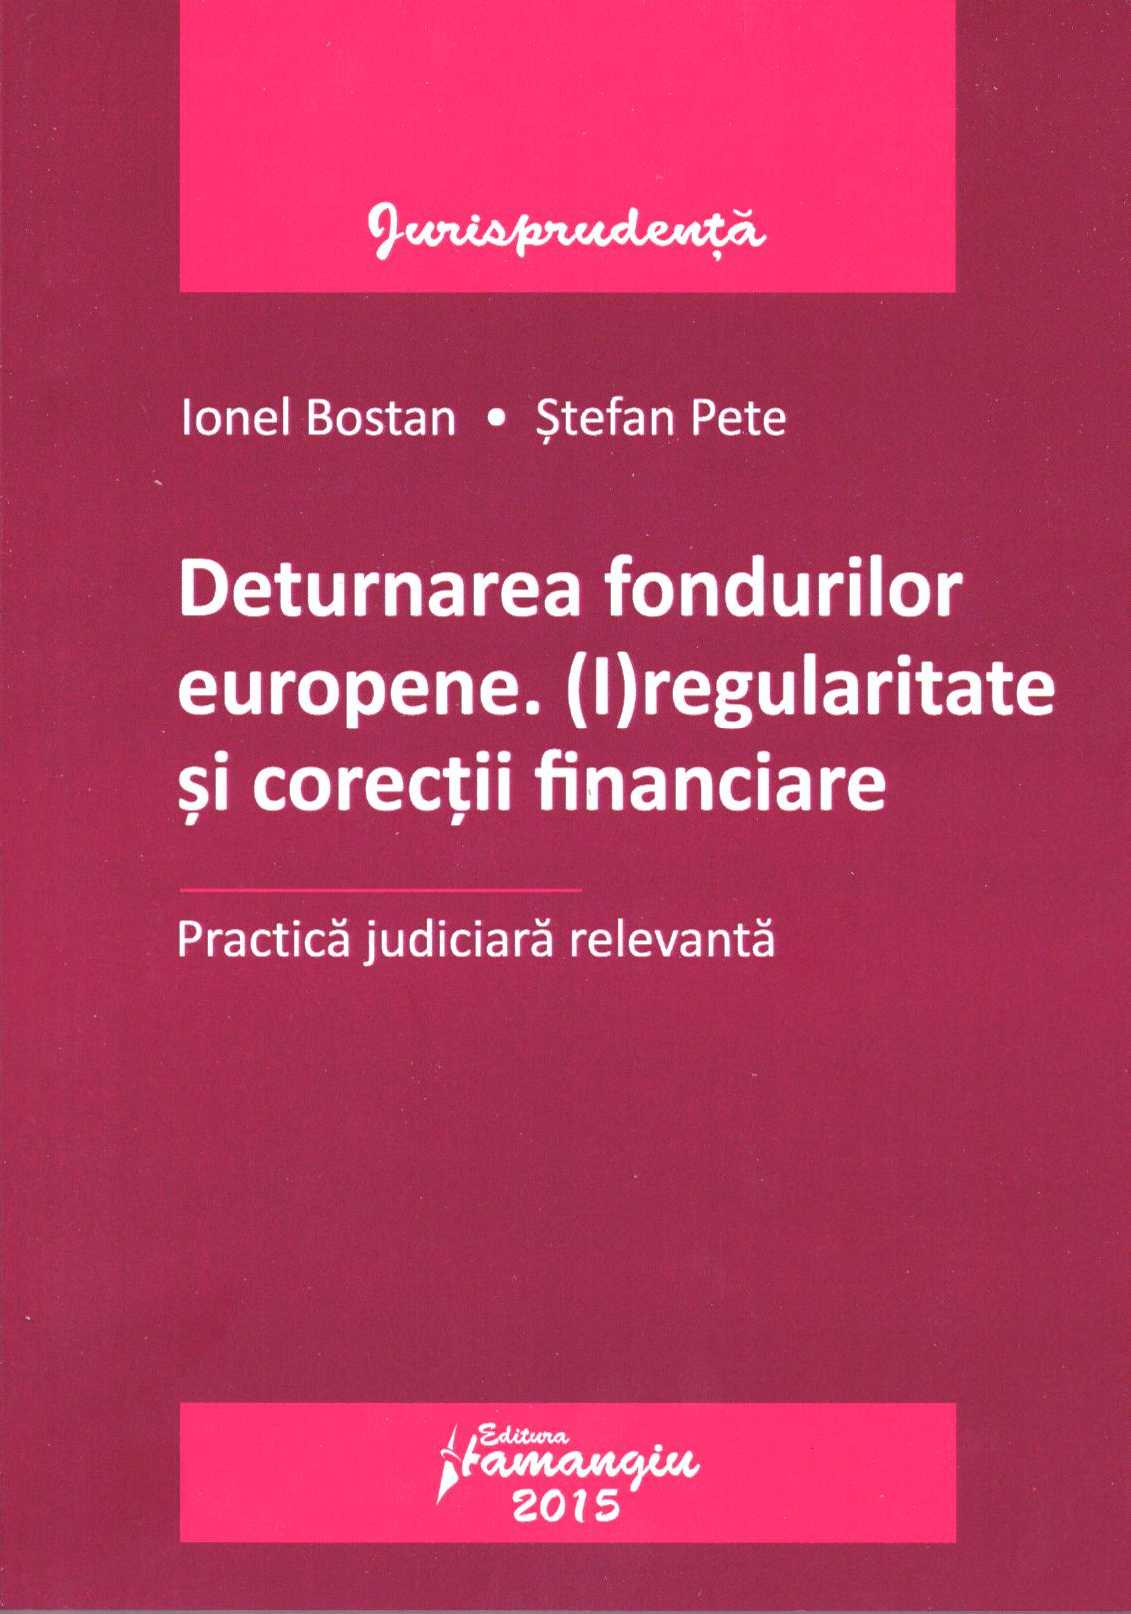 Deturnarea fondurilor europene. Iregularitate si corectii financiare - Ionel Bostan, Stefan Pete